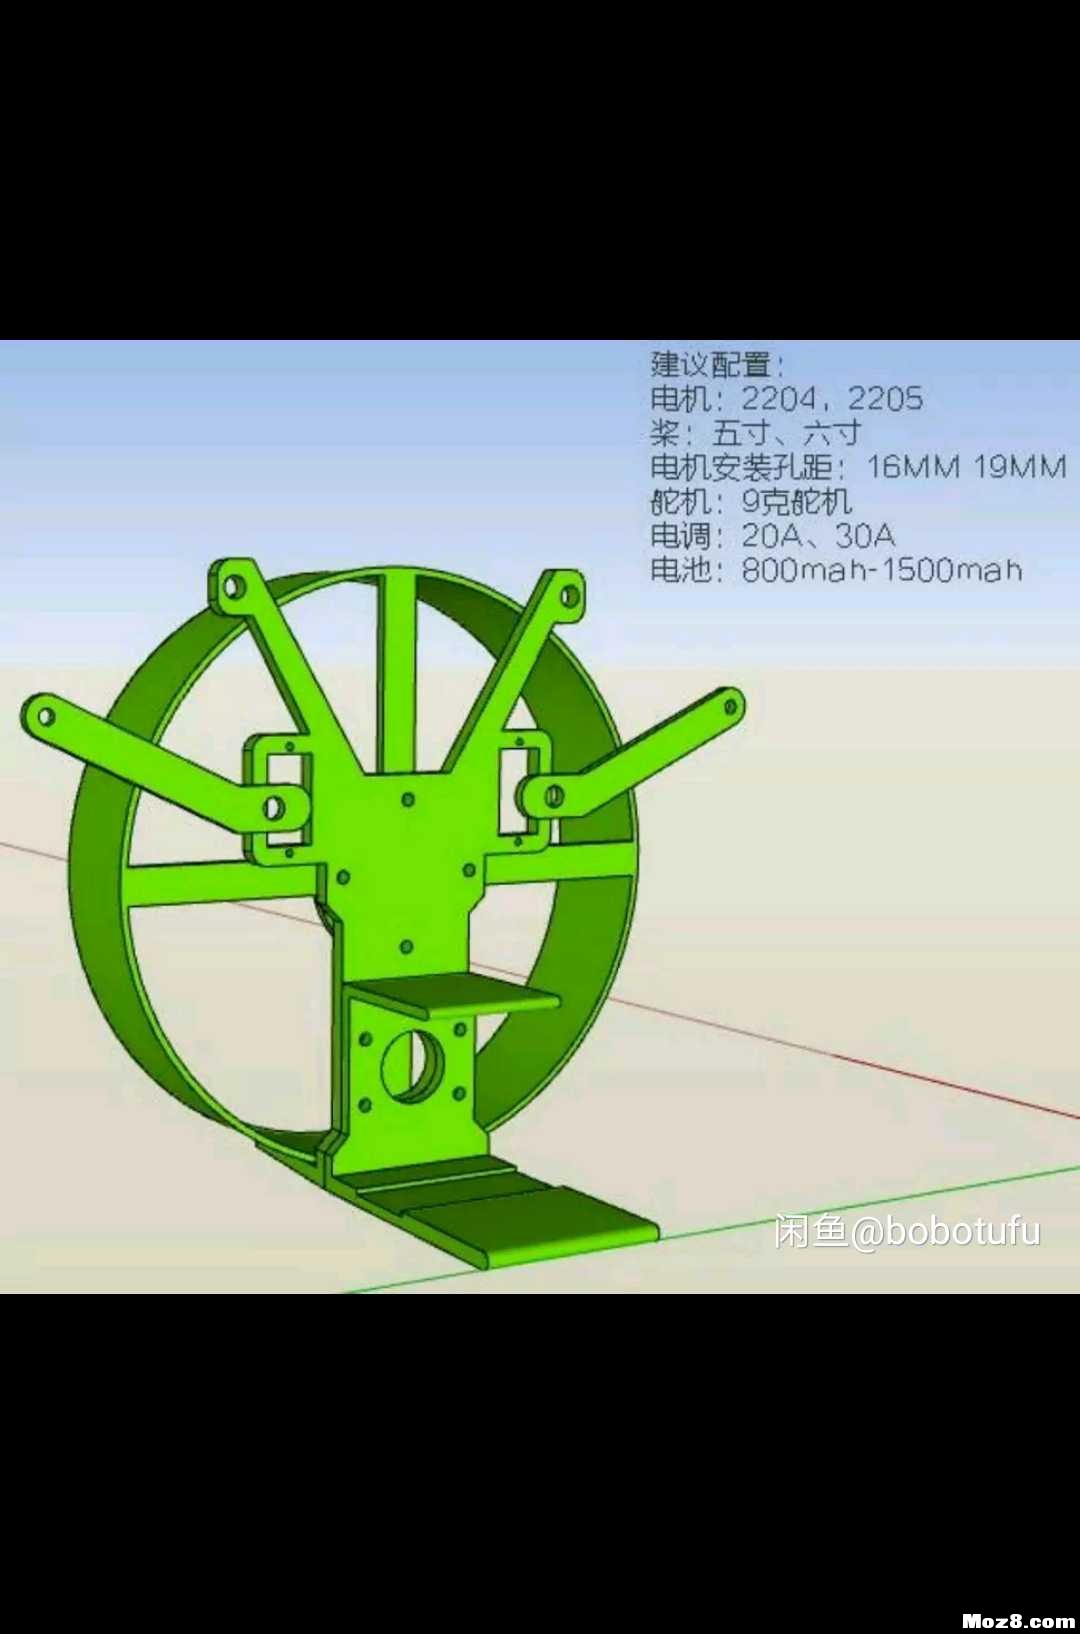 遥控动力伞 3D机架重画 模型,固定翼,舵机,电调,电机 作者:bobotufu 481 